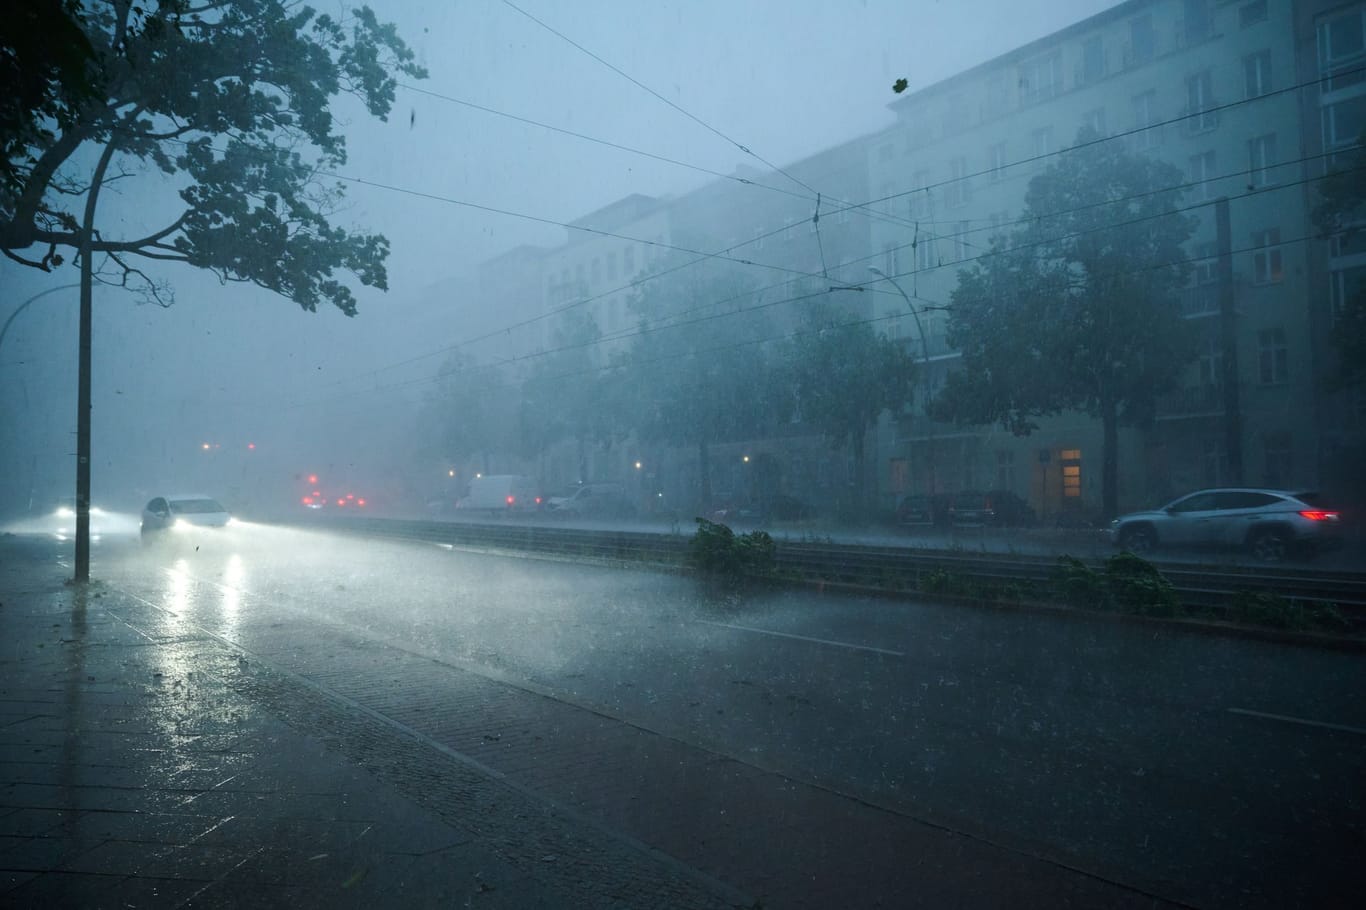 Starker Regen und Wind kommen am Donnerstag in einigen Teilen Deutschlands herunter. (Archivbild)